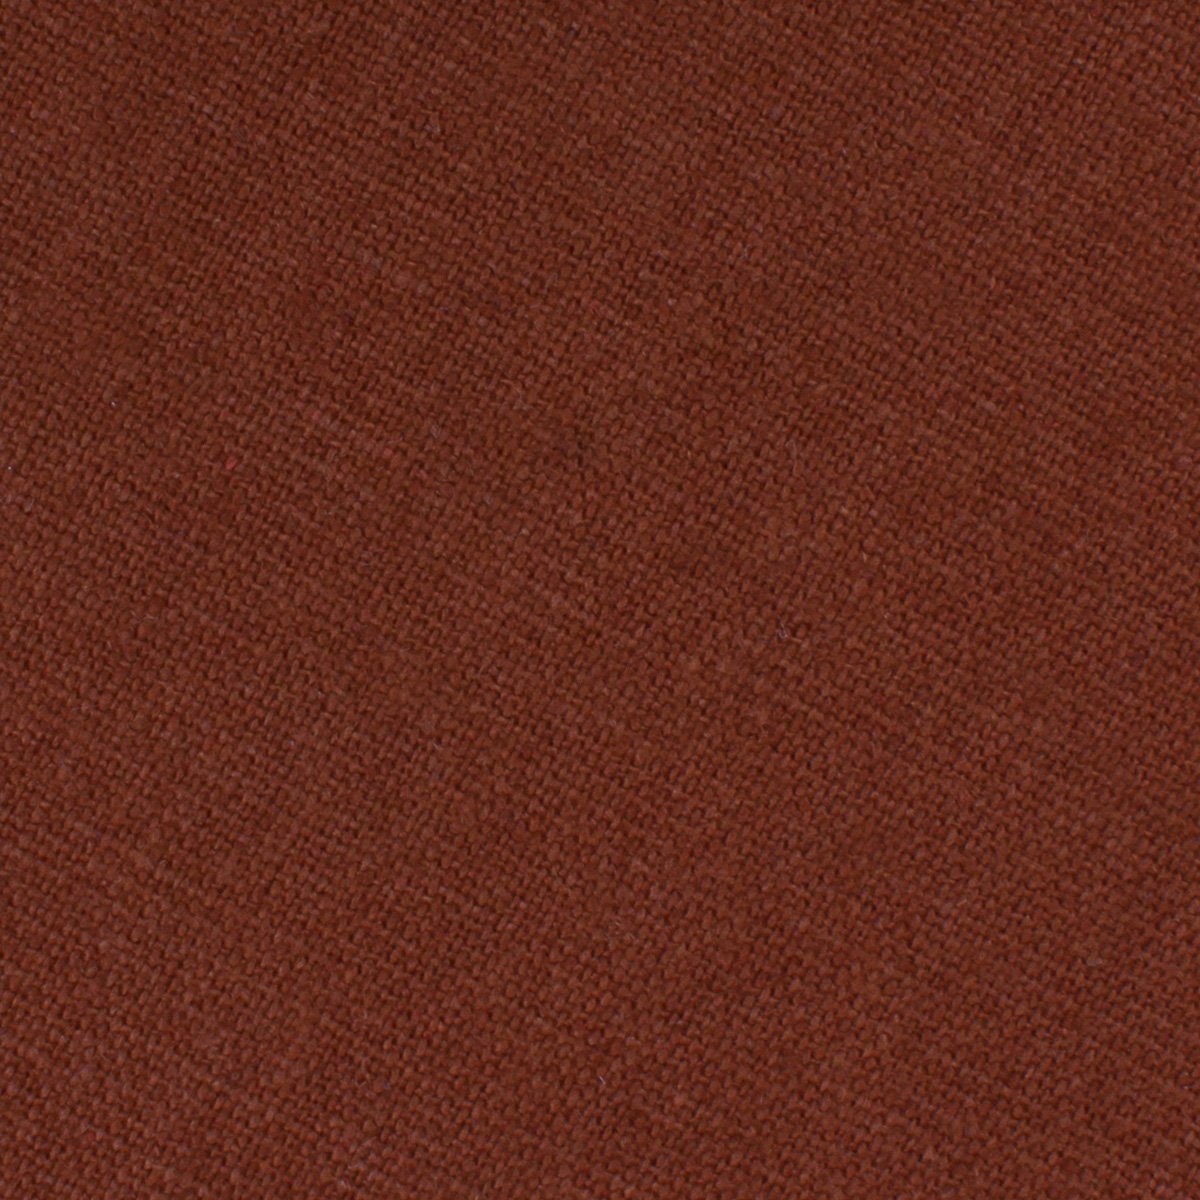 Burnt Golden Brown Linen Necktie Fabric